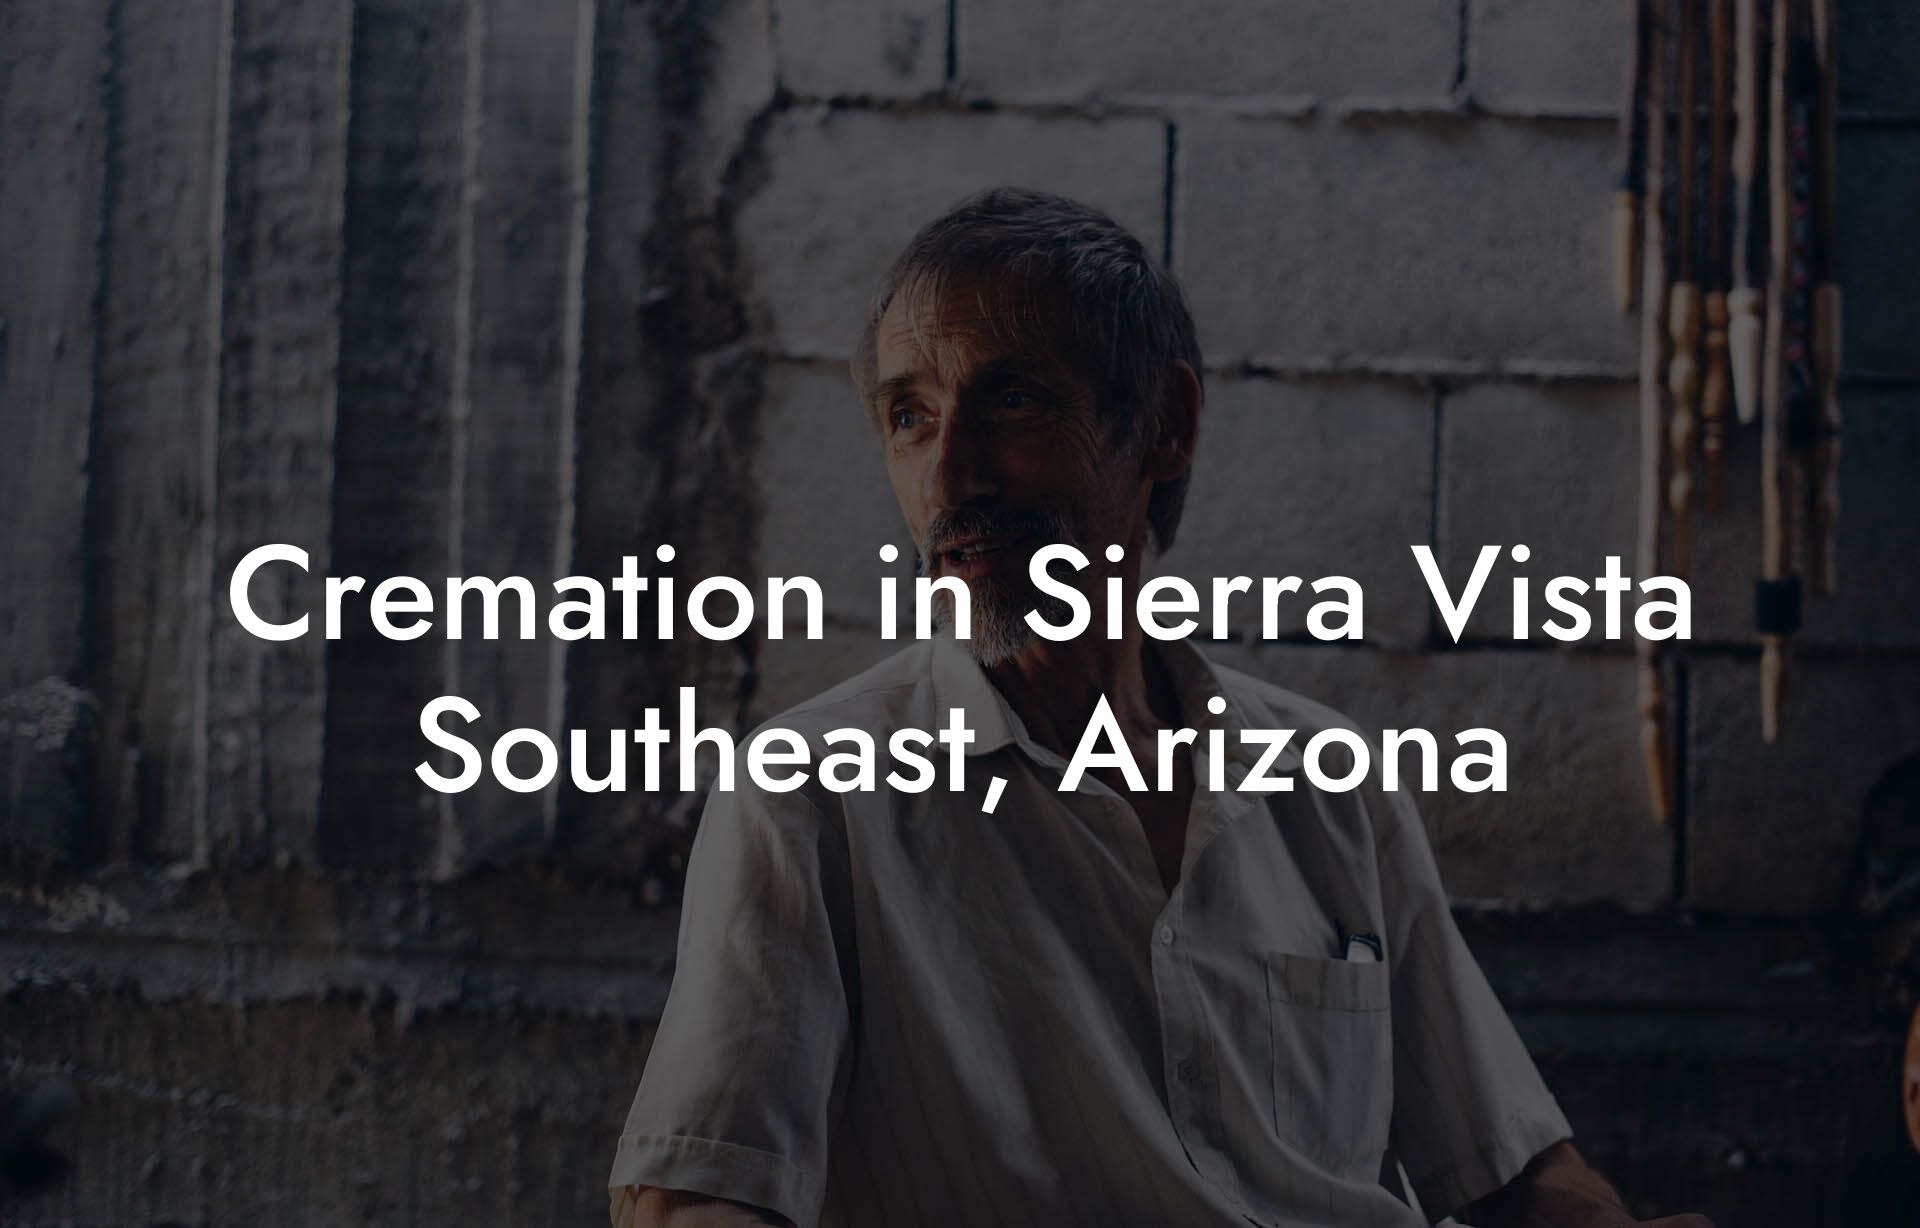 Cremation in Sierra Vista Southeast, Arizona